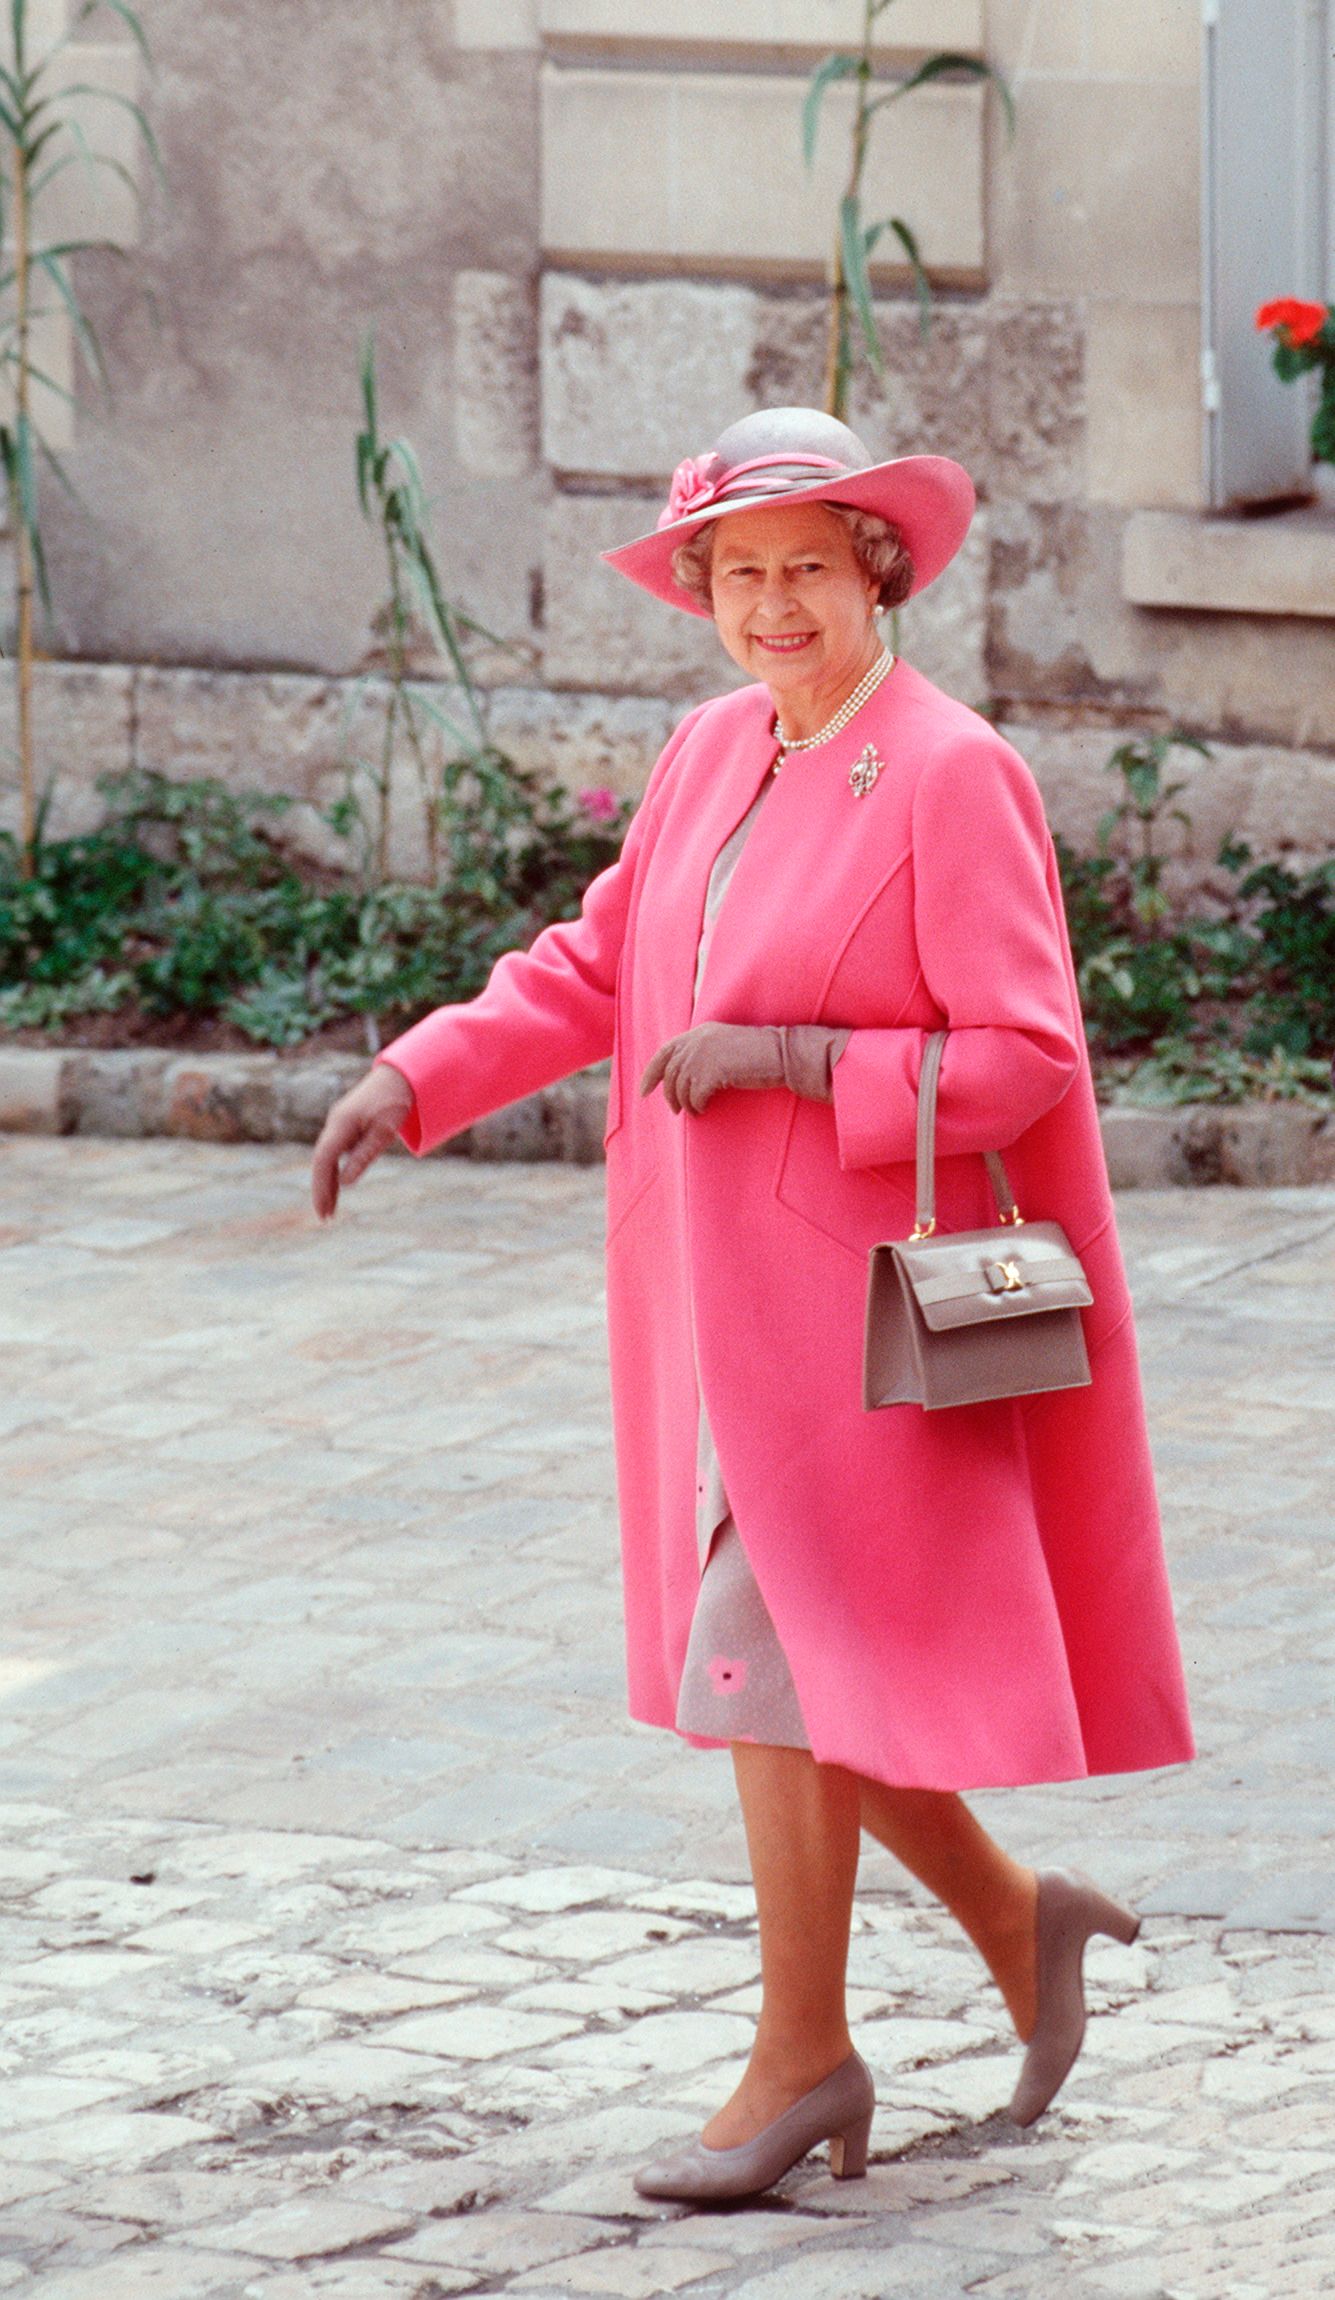 Reina Elizabeth en Blois, Francia en junio de 1992. | Foto: Getty Images